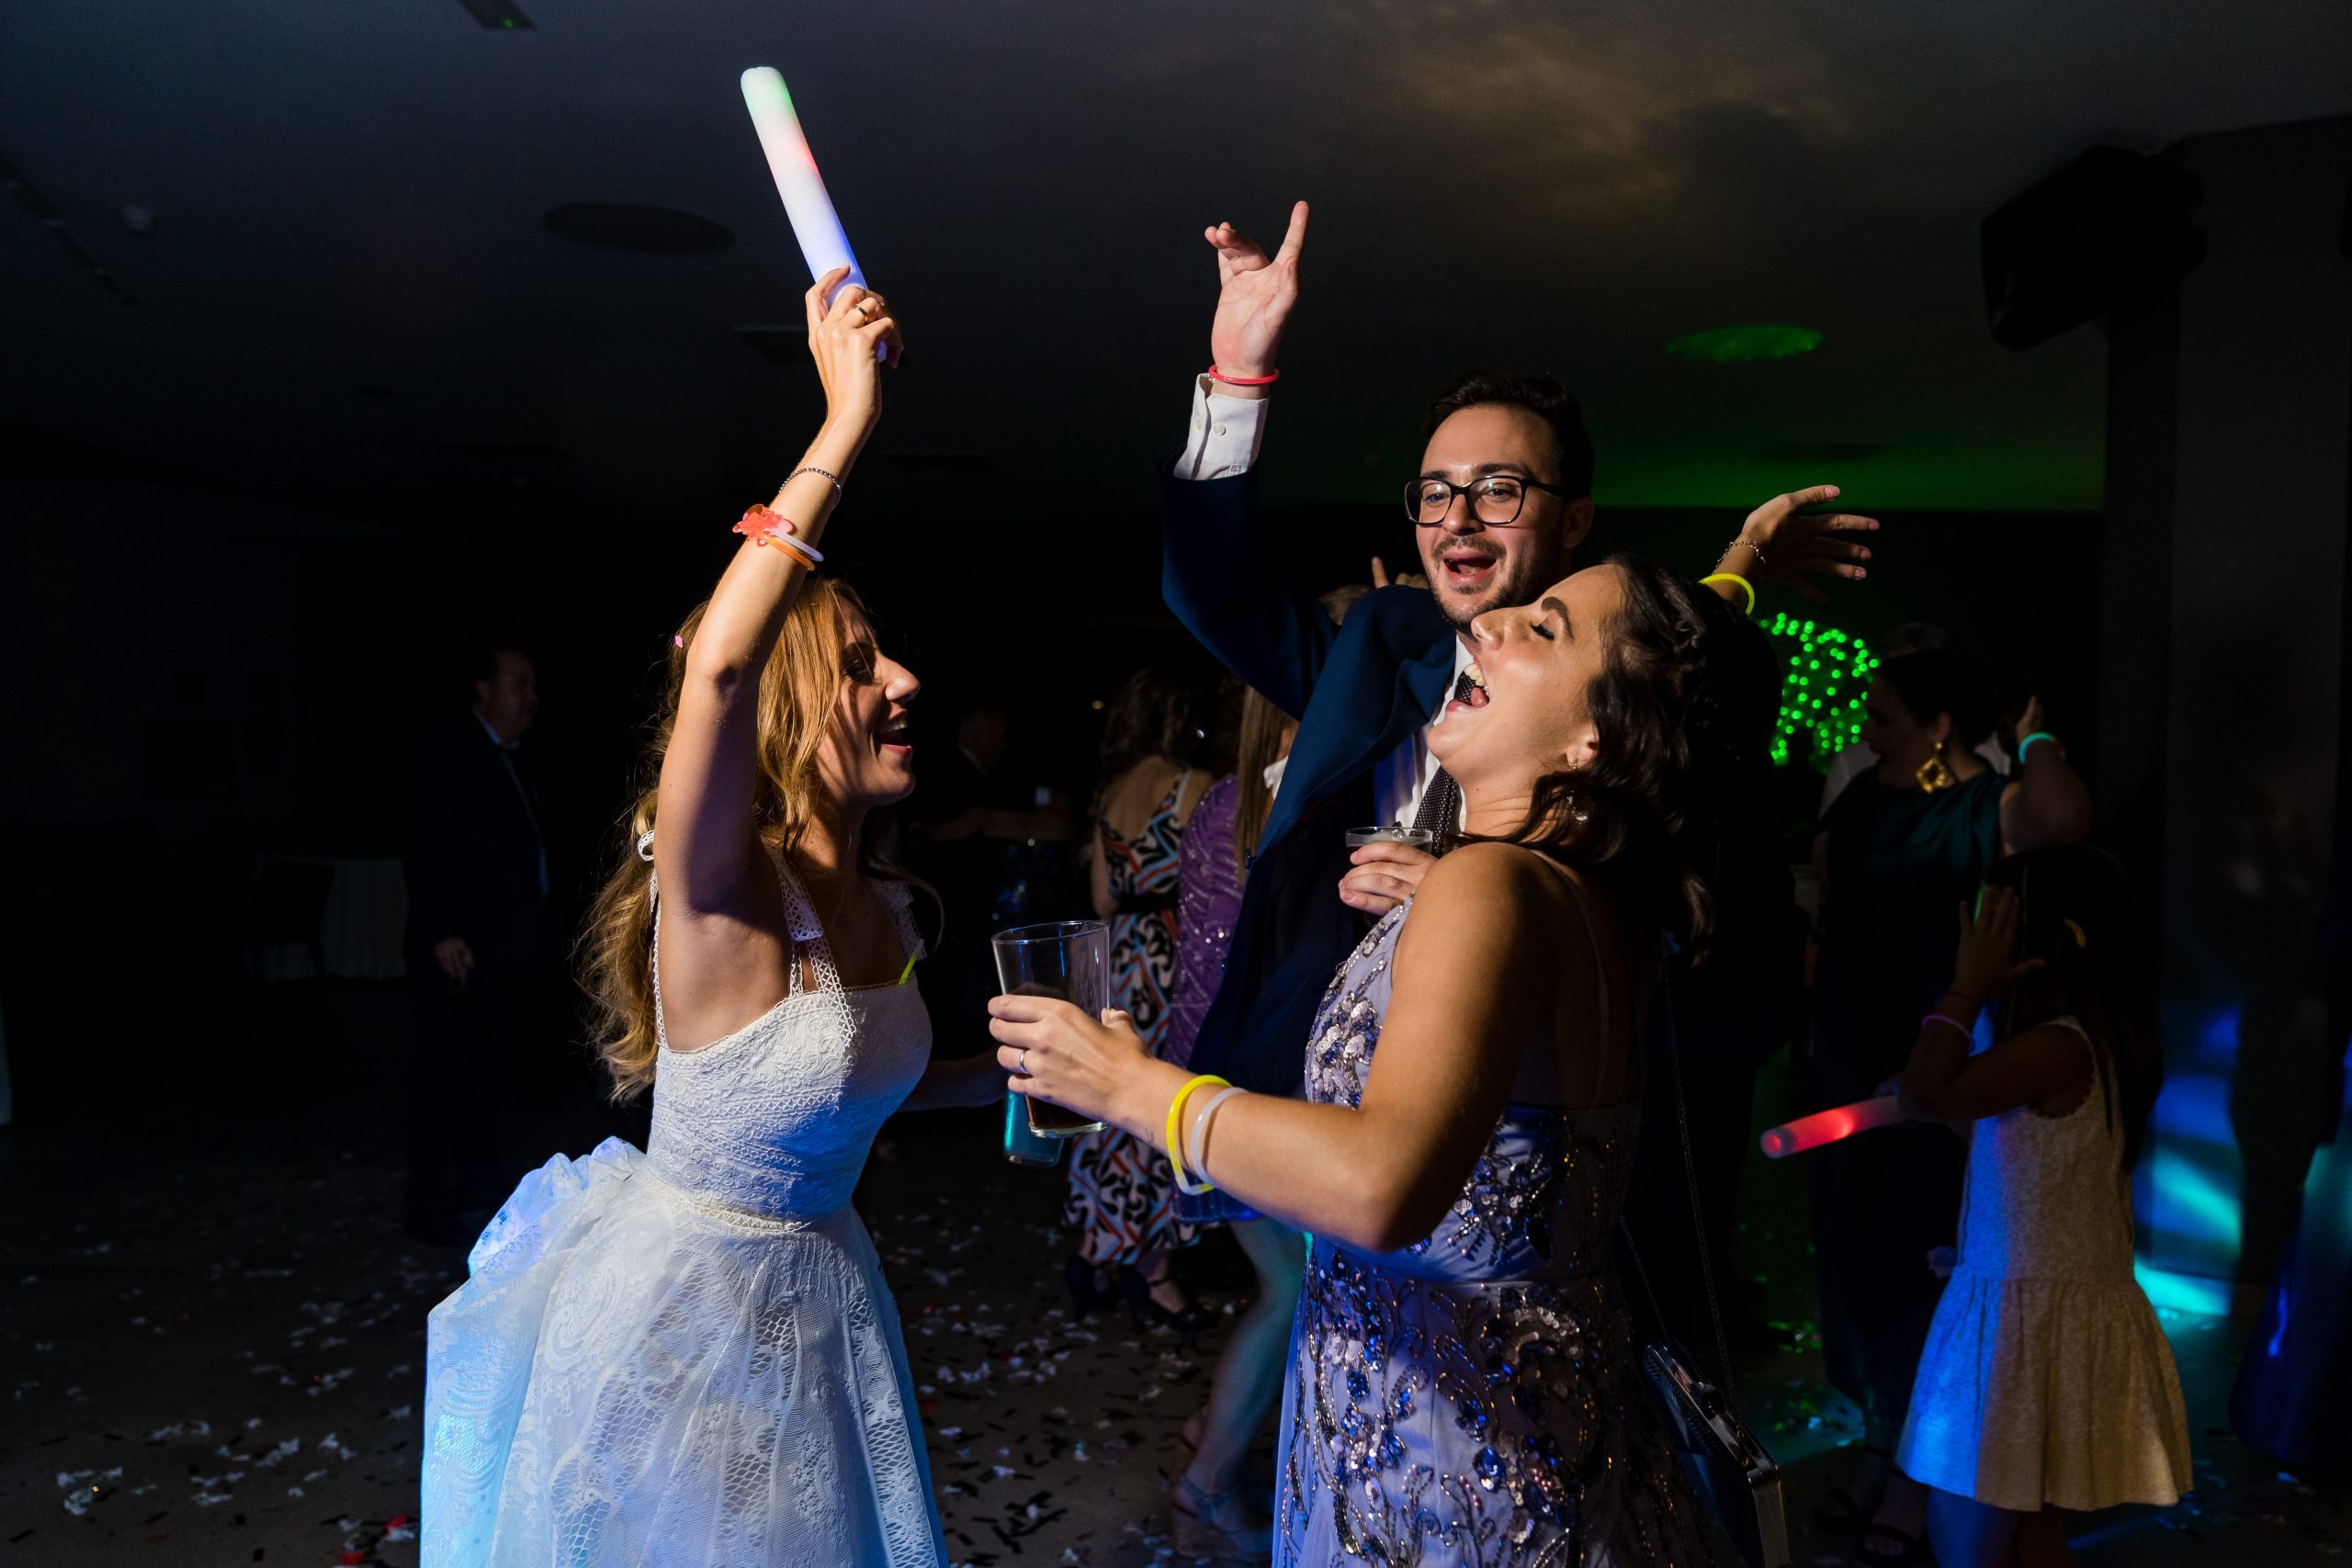 La novia bailando con sus amigos en mitad de la pista mientras se ríen